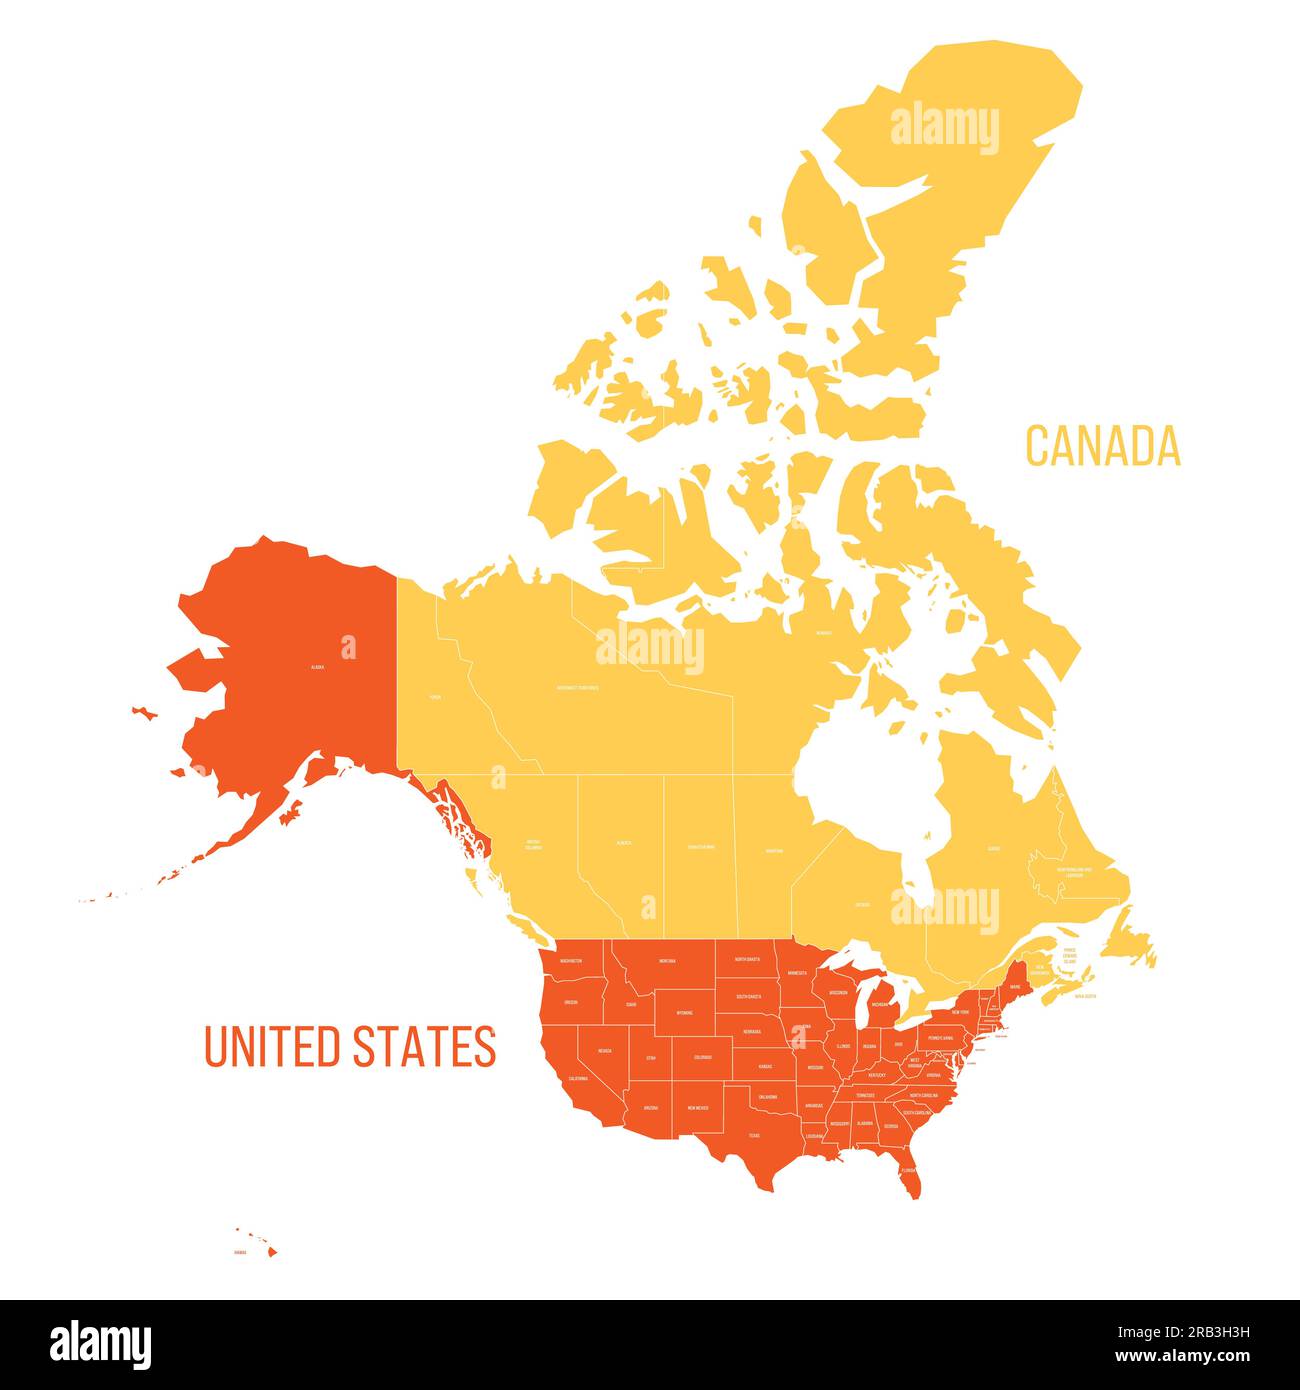 Mappa politica degli Stati Uniti e del Canada delle divisioni amministrative. Mappa vettoriale colorata con etichette. Illustrazione Vettoriale